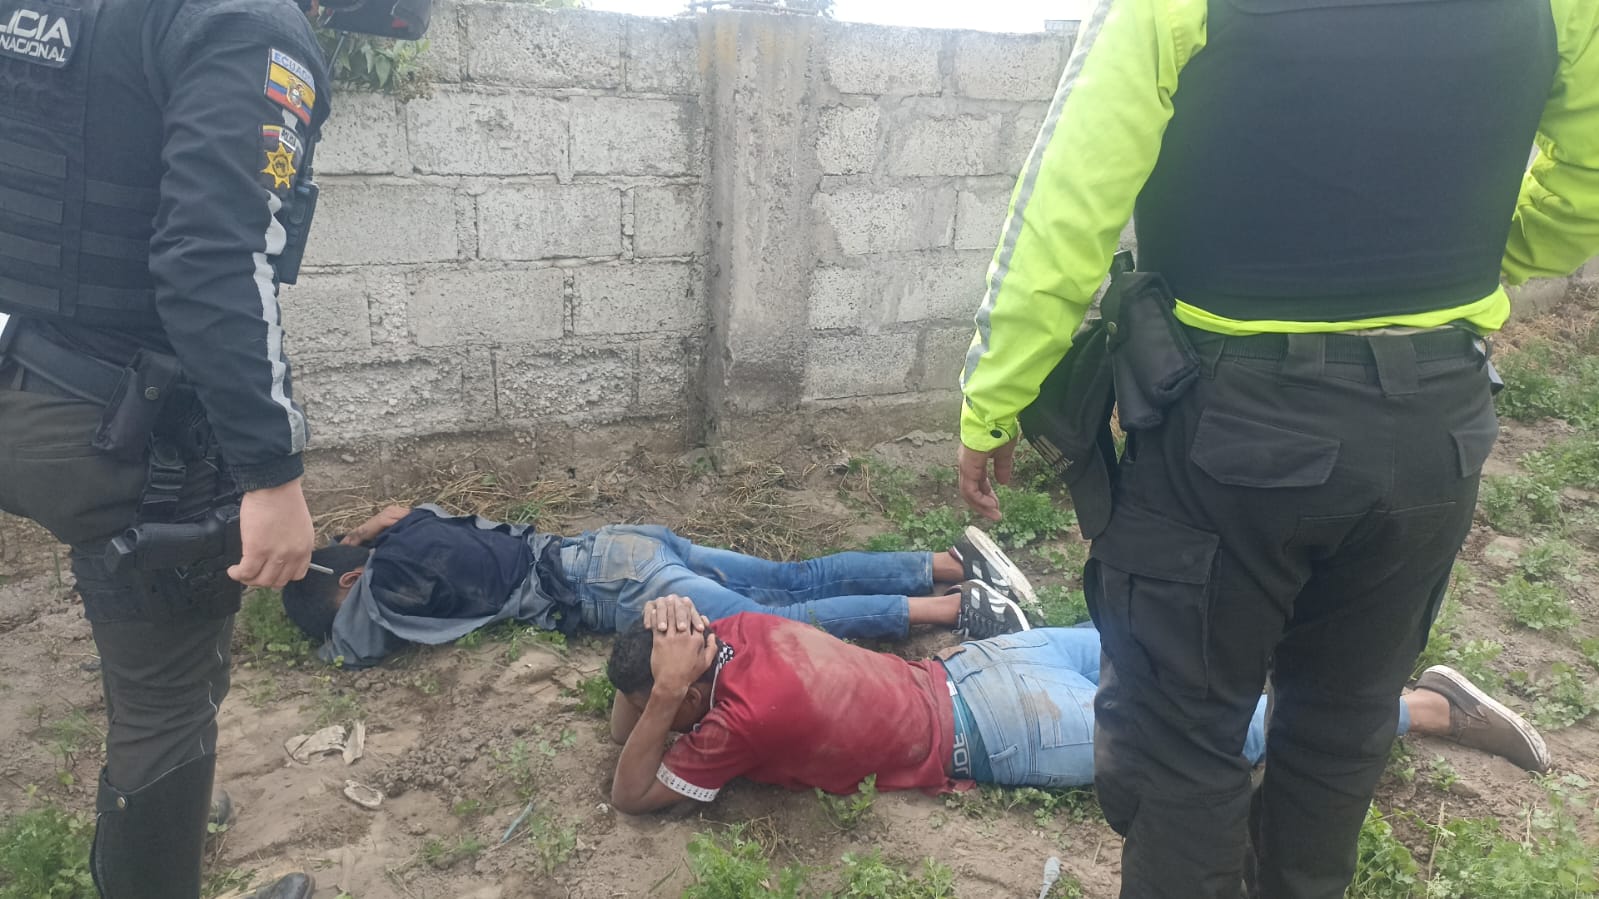 La Policía detuvo a dos de los jóvenes en un terreno baldío cerca a donde cometieron el robo y el CAI.